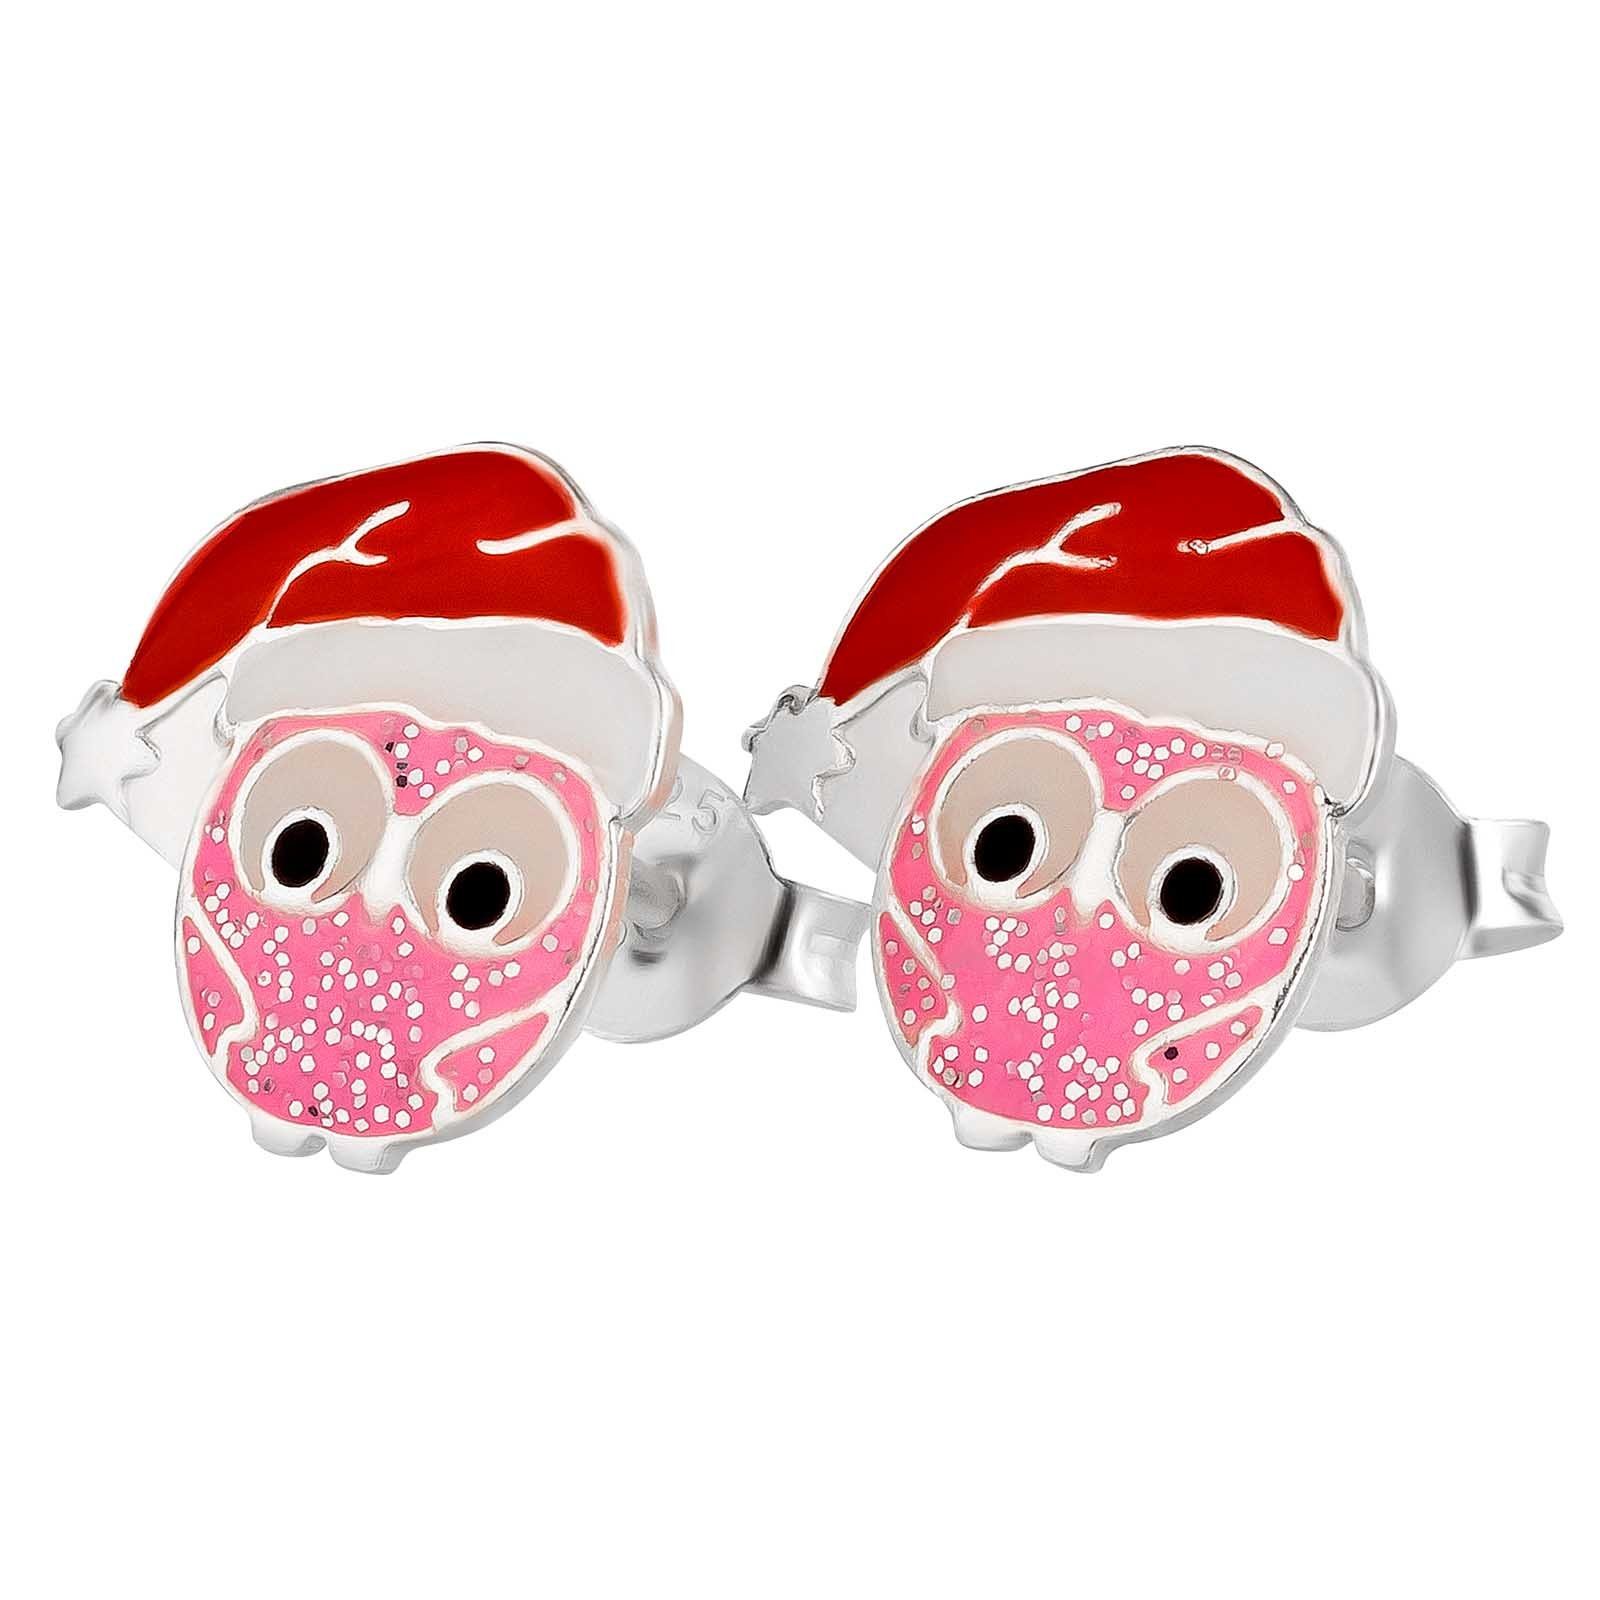 schmuck23 Paar Ohrstecker Ohrringe Eule Pink Weihnachten 925 Silber Kinder